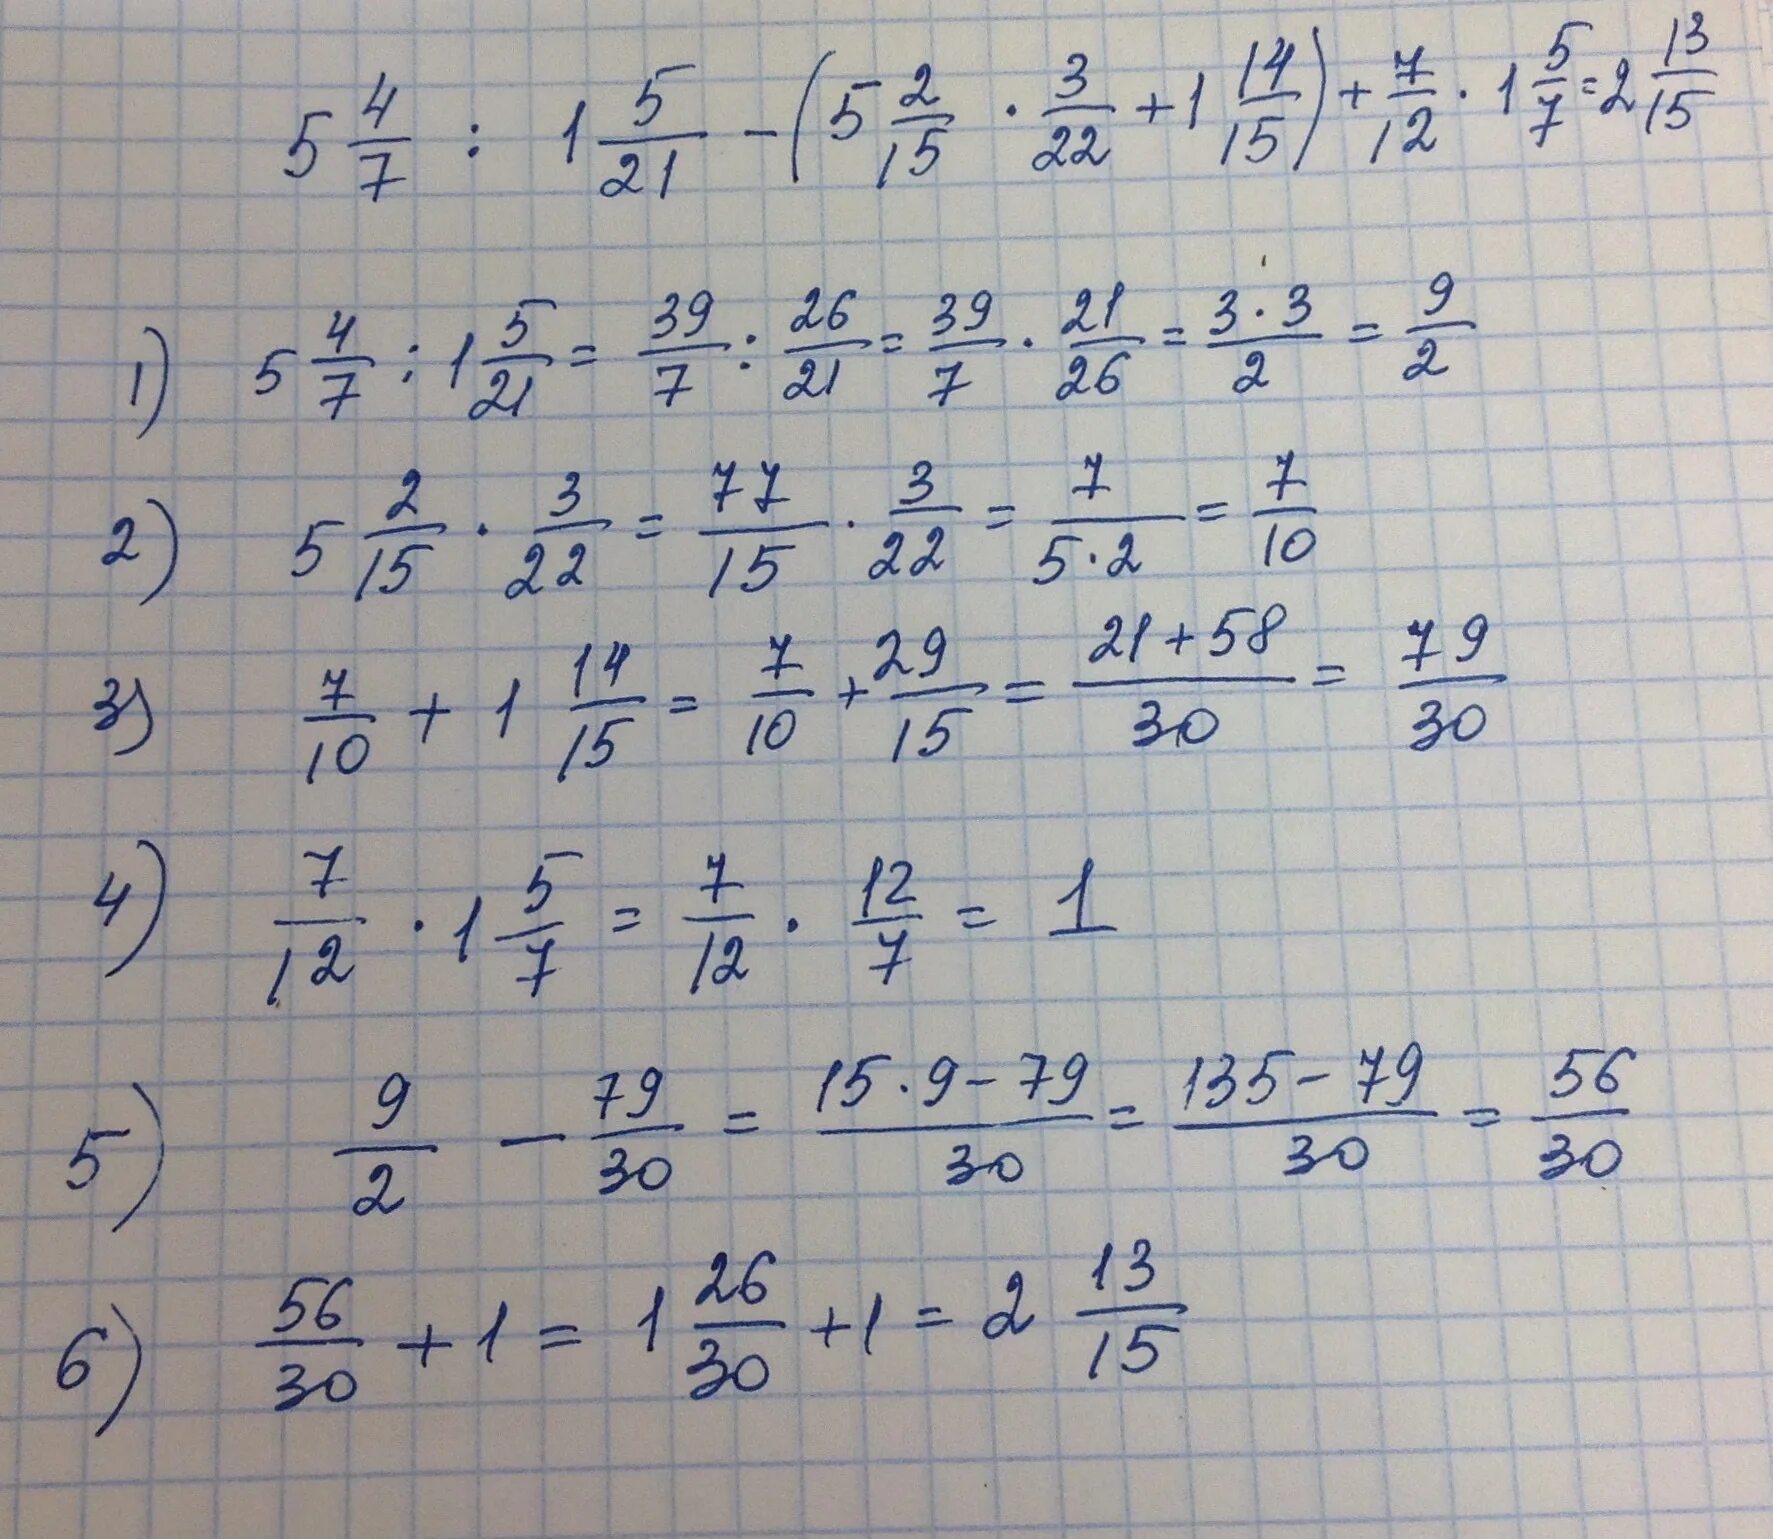 3 8 8 13 ответ решение. НВКУ 49-12-7. 5 × 12/15 +(5,6-11,2):1, 6/5. 5 1/3×2 1/4÷7 1/5 ответ. (5/6+2 3/4):4 7/9*2 2/3-1 2/3.